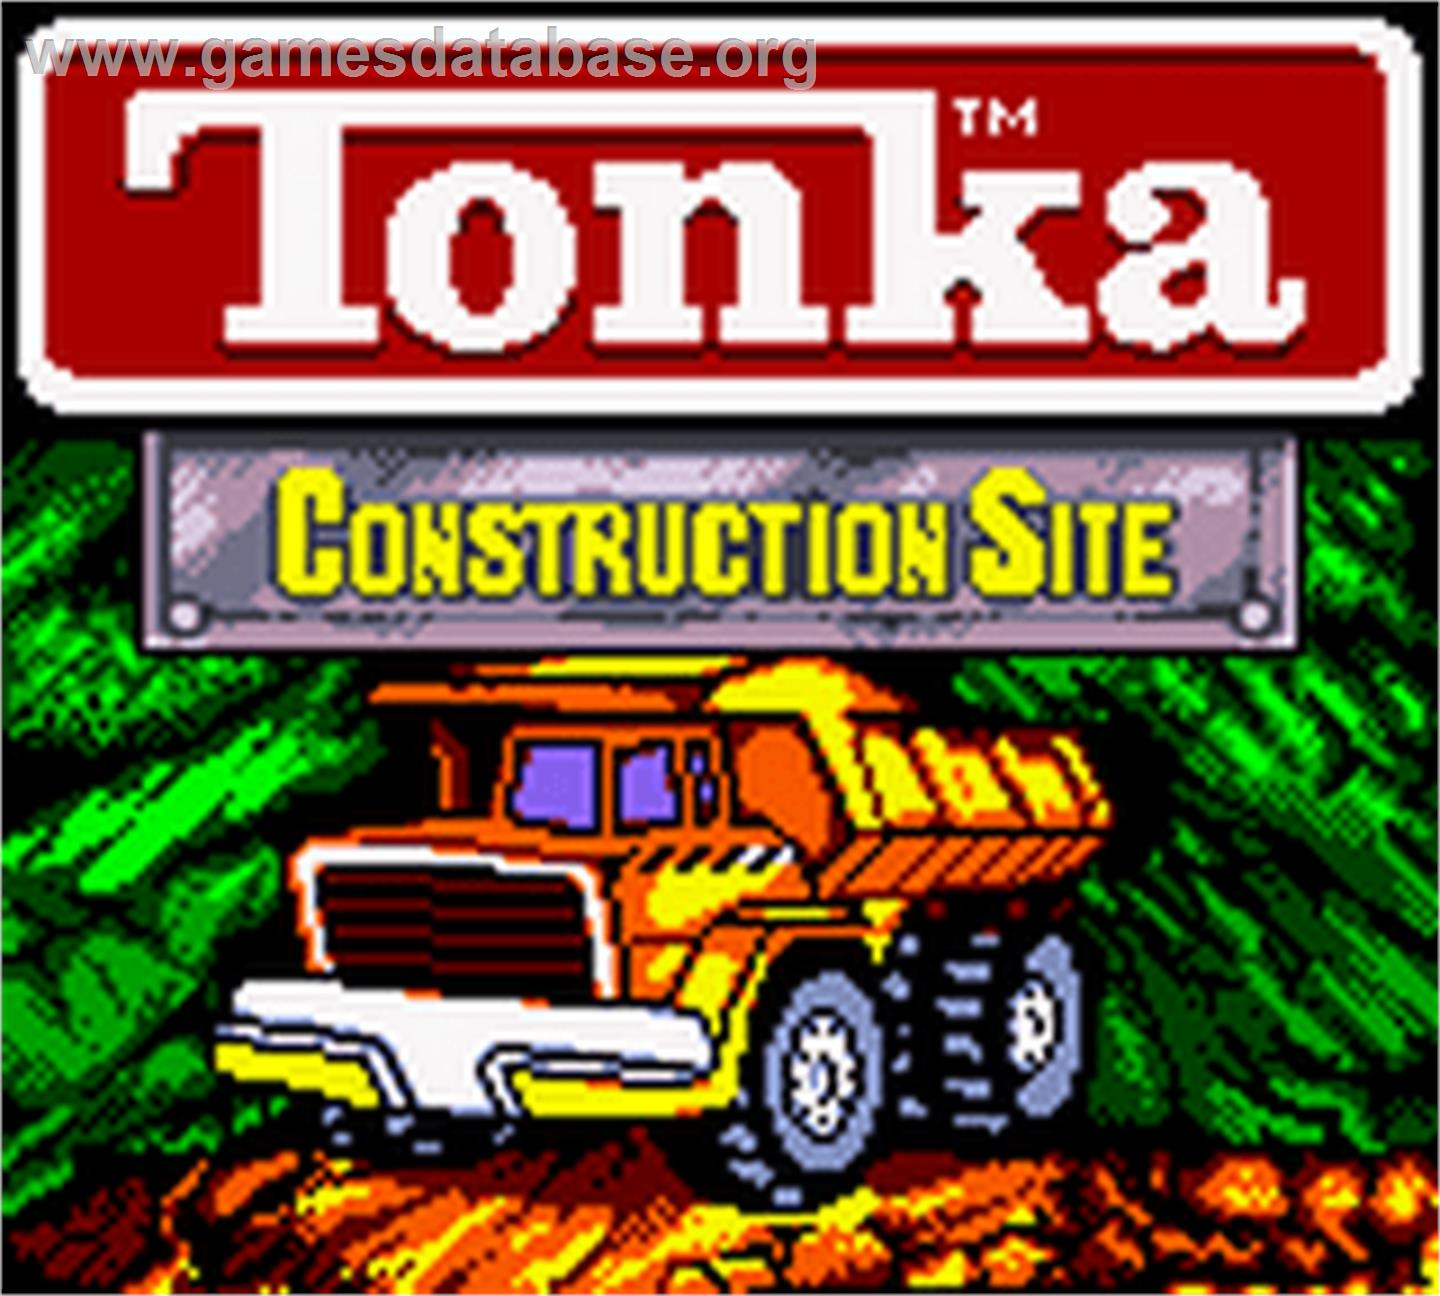 Tonka Construction Site - Nintendo Game Boy Color - Artwork - Title Screen